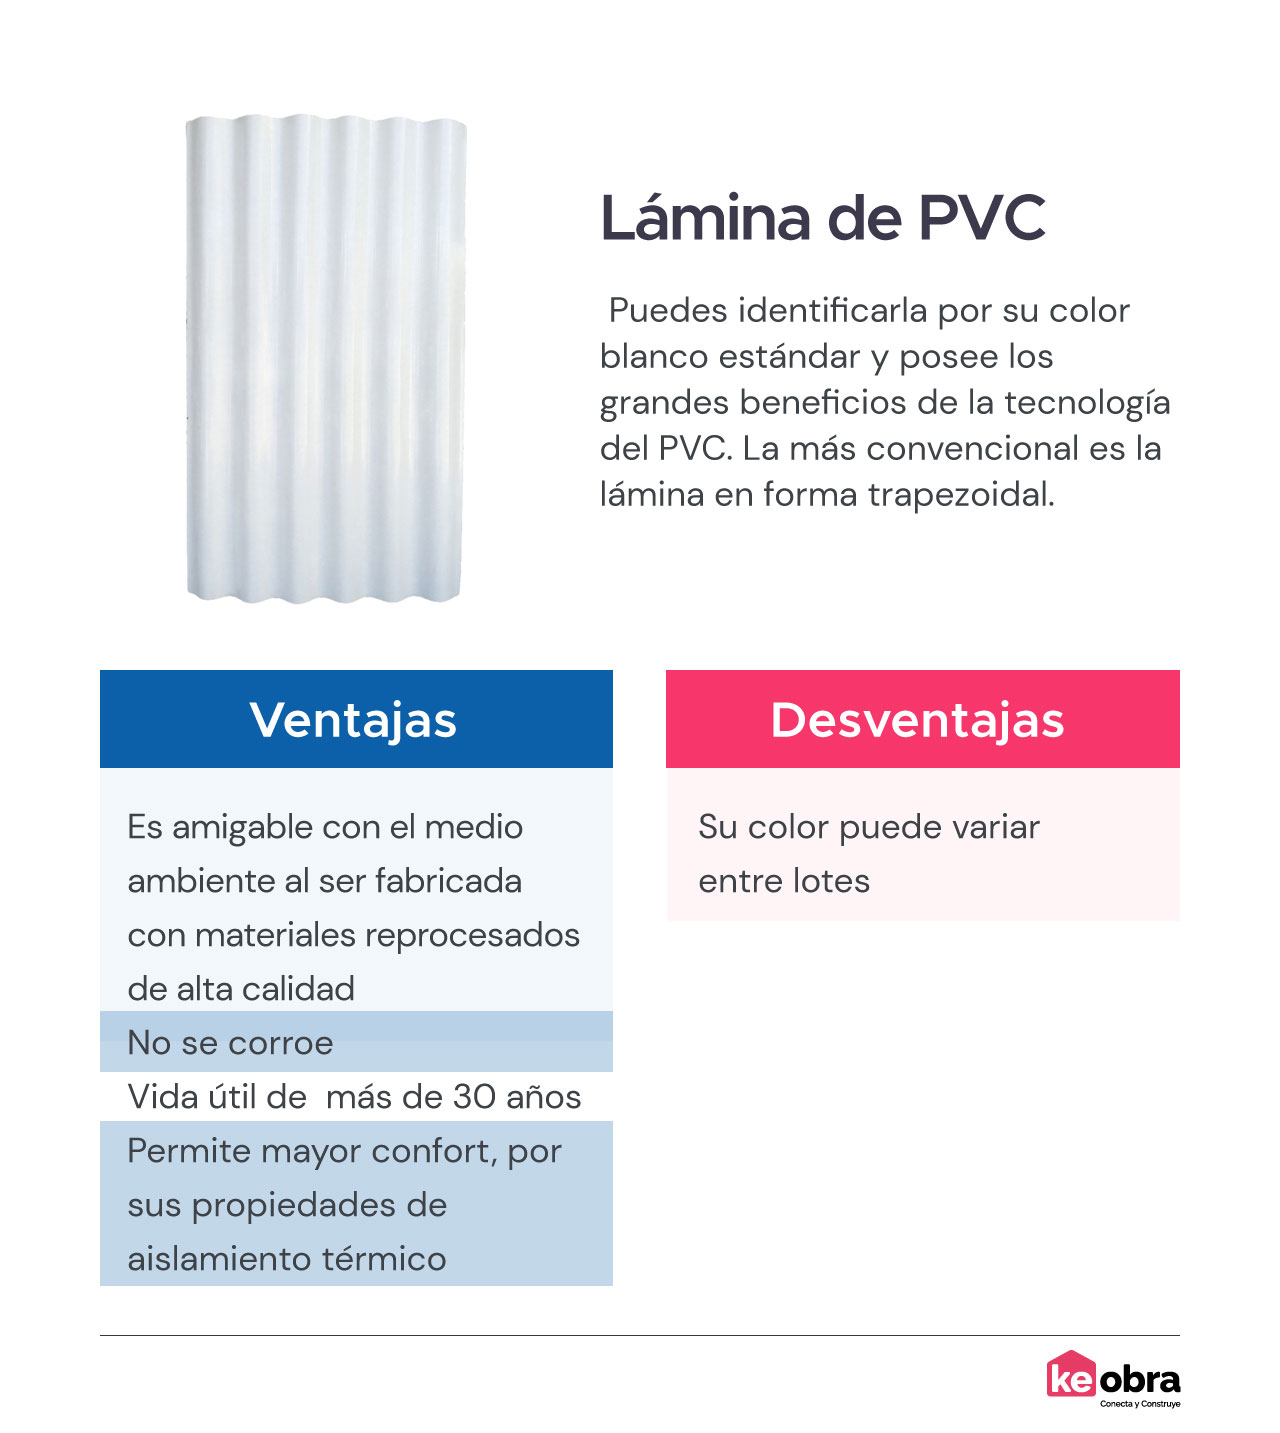 Lámina de PVC
 Puedes identificarla por su color blanco estándar y posee los grandes beneficios de la tecnología del PVC. La más convencional es la lámina en forma trapezoidal. 
